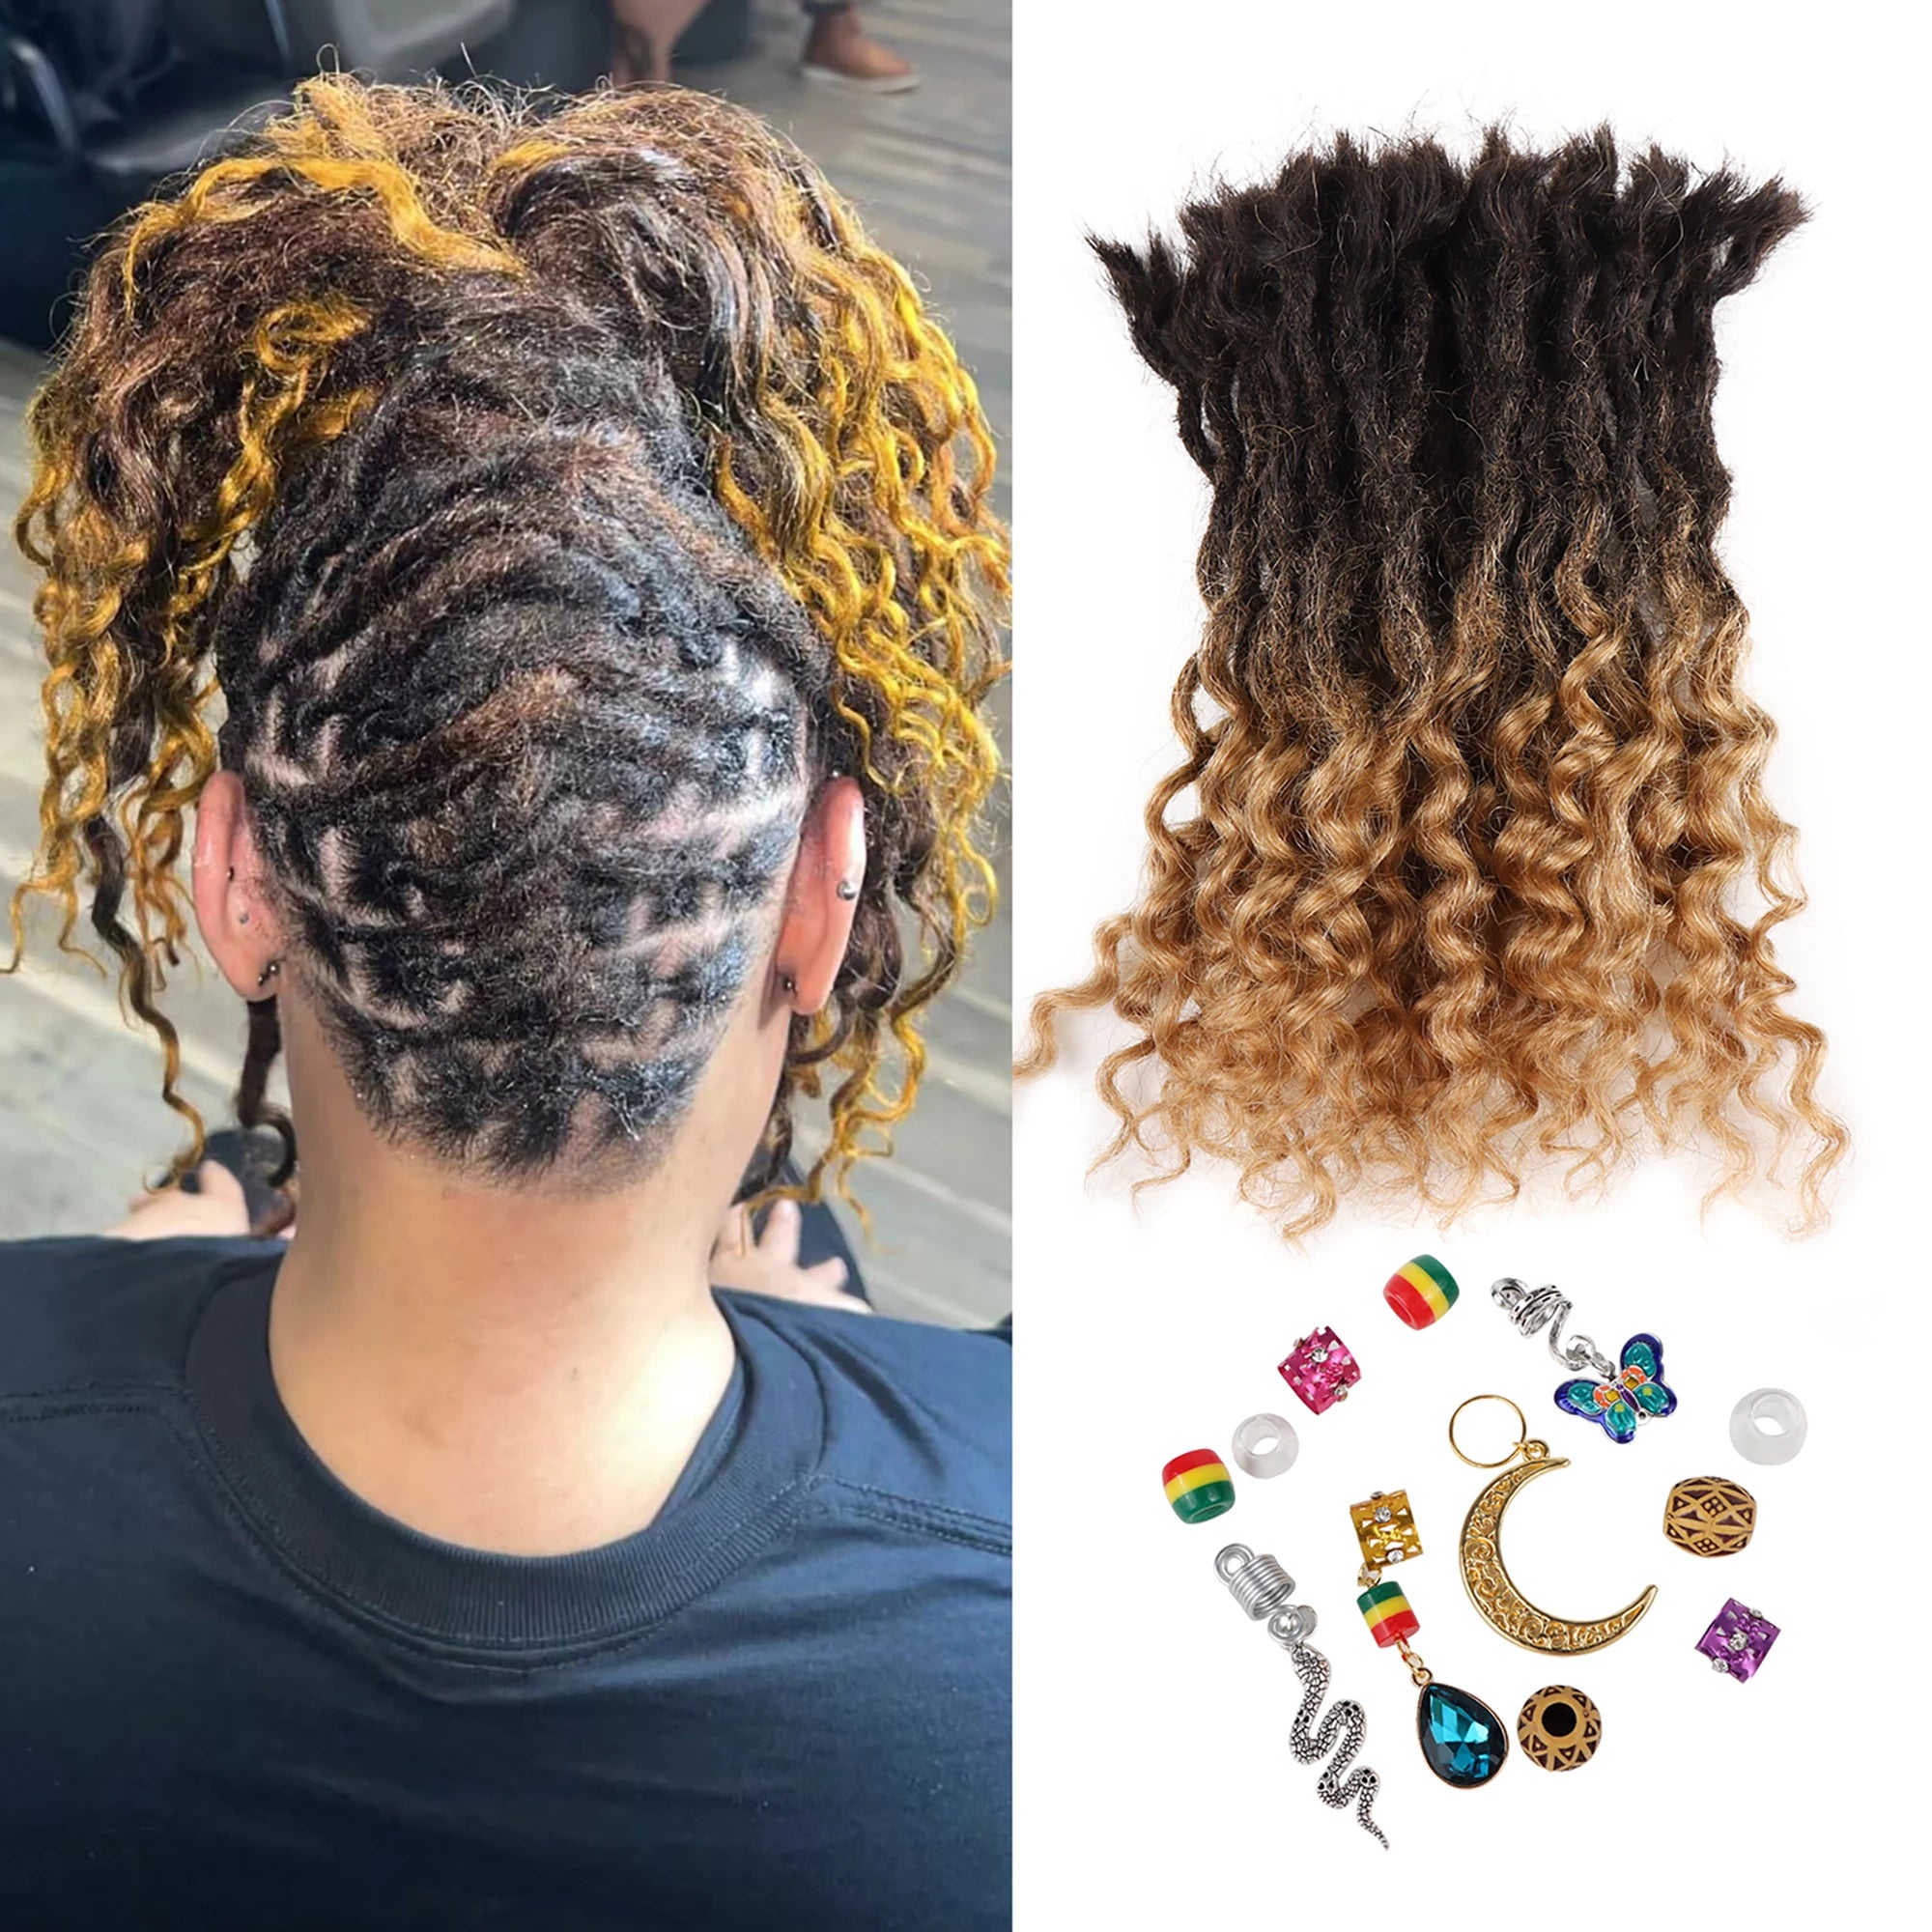 AHVAST 0.4cm 0.6cm 0.8cm Width 100%Human Hair Textured  Loc Extension Natural Hair Curly Hair,Full Handmade Permanent Hair